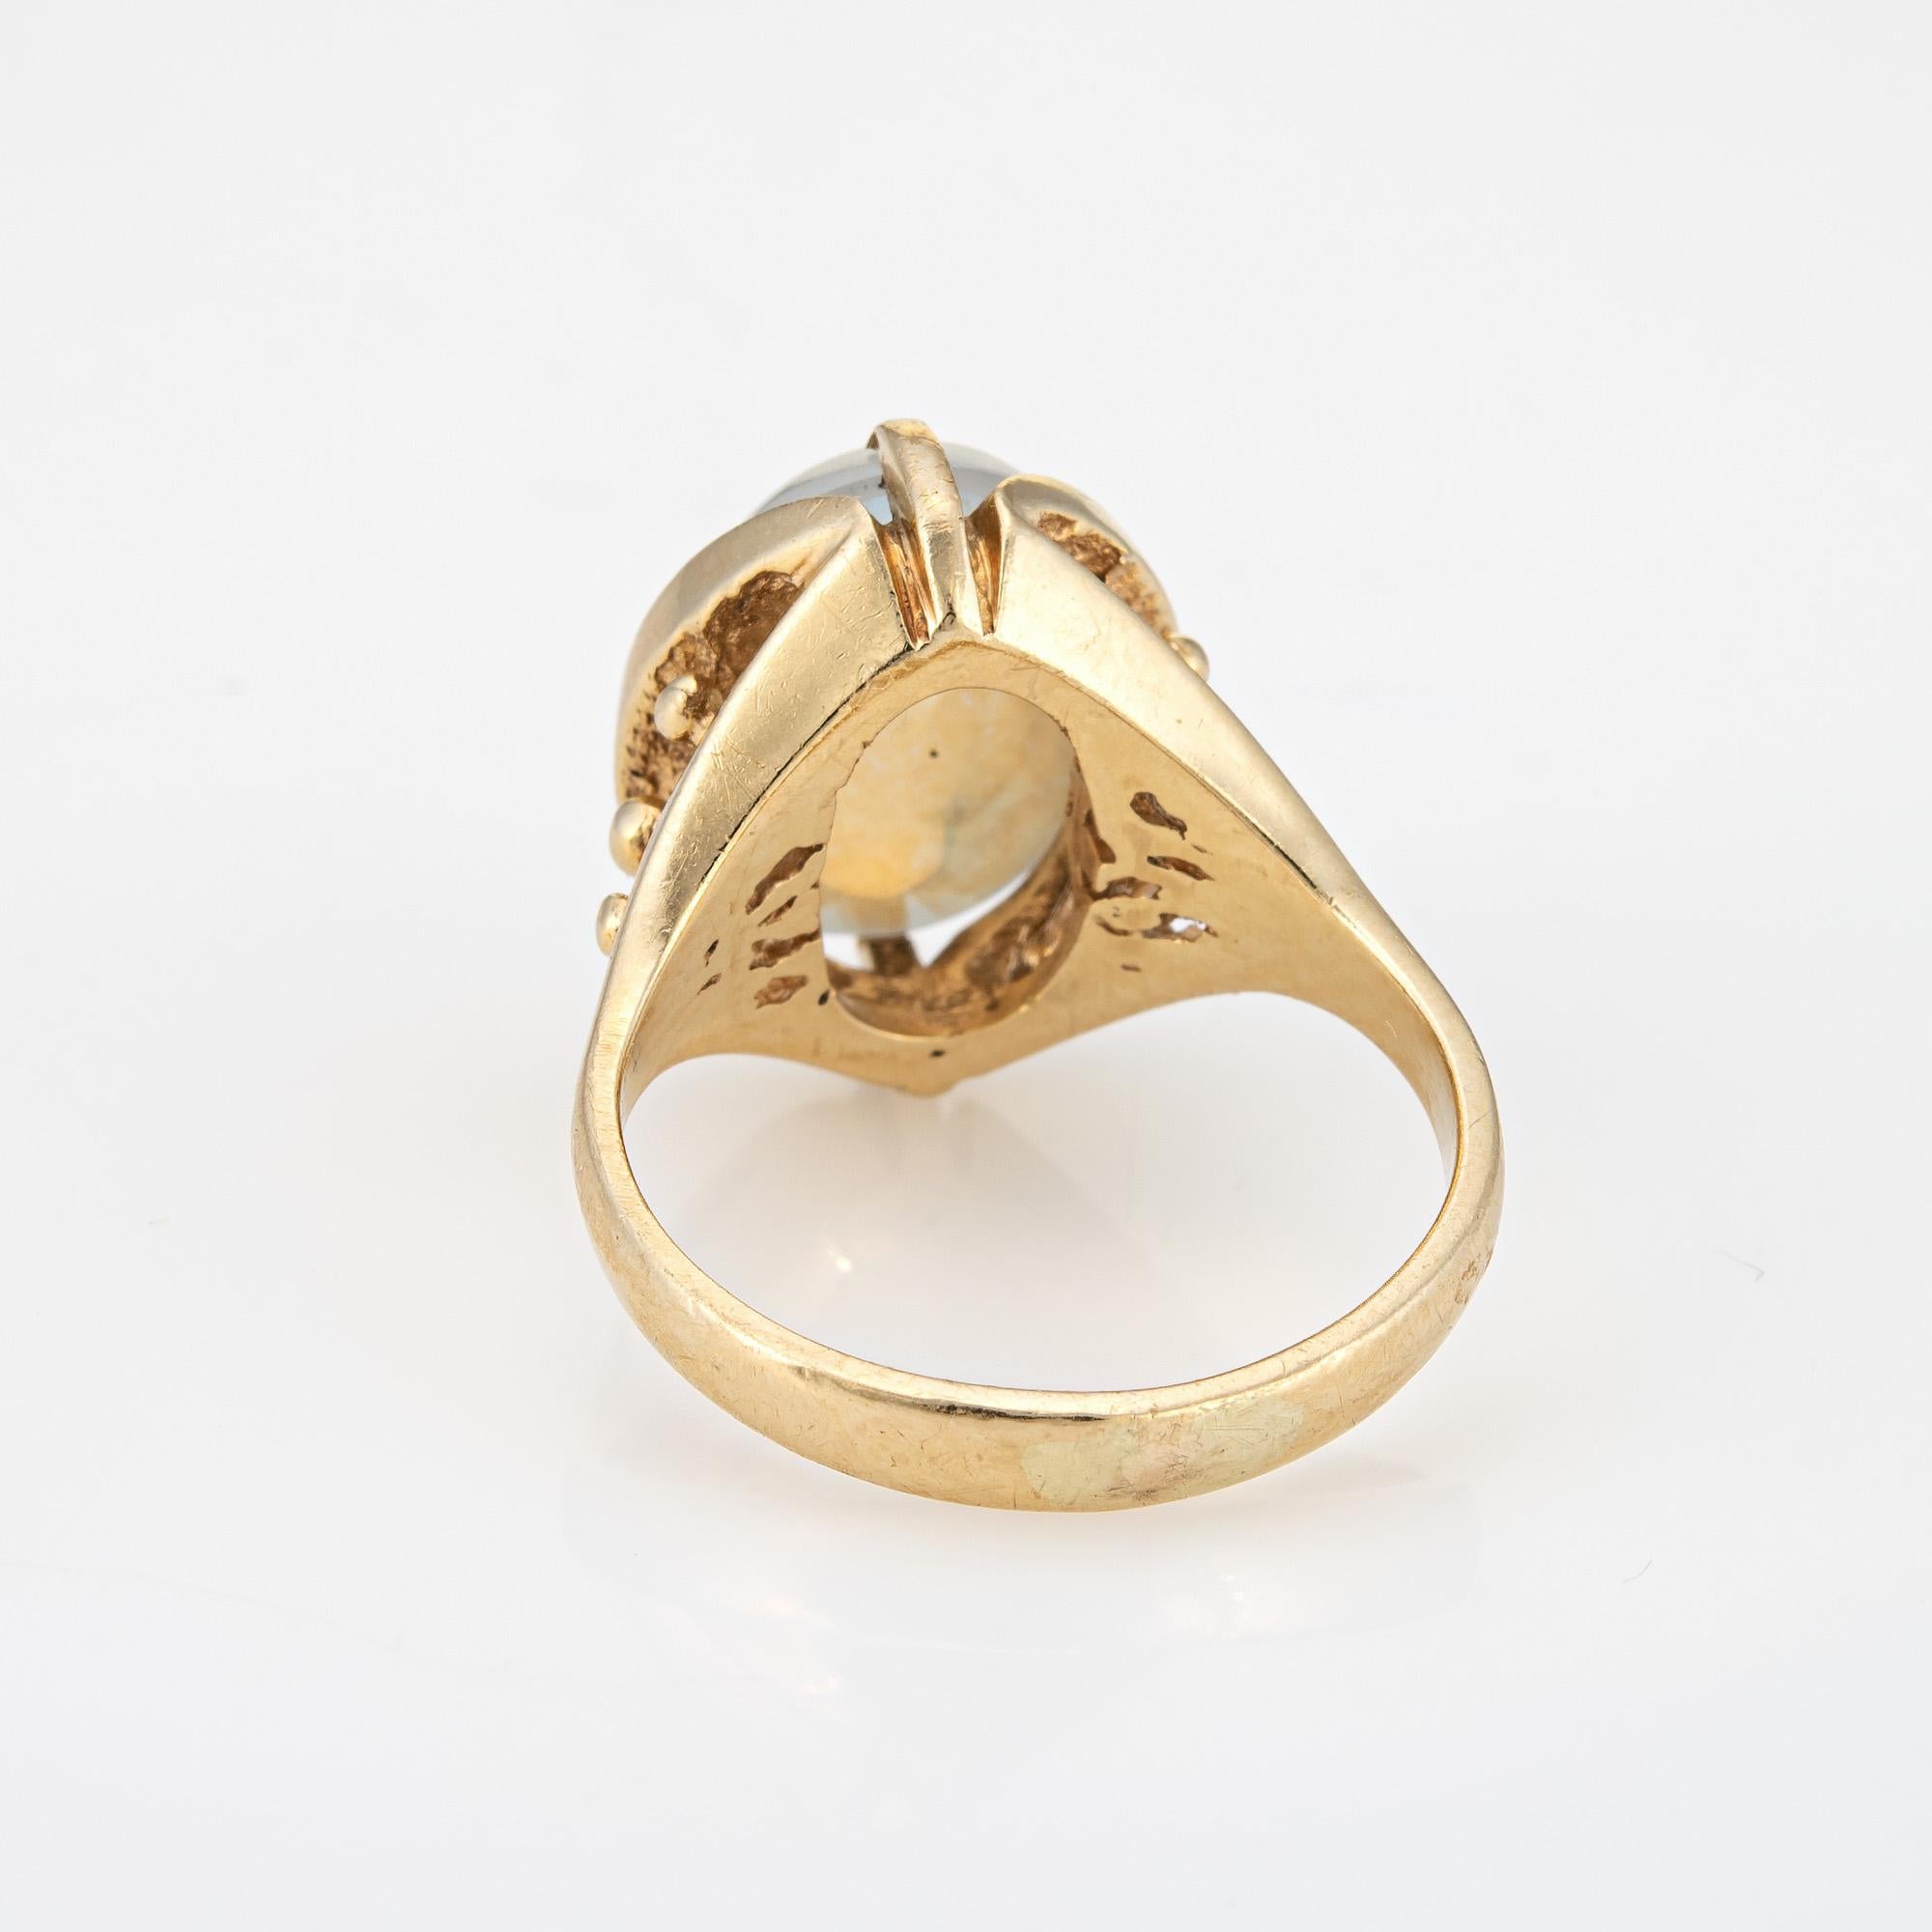 siffari 10k ring price in canada